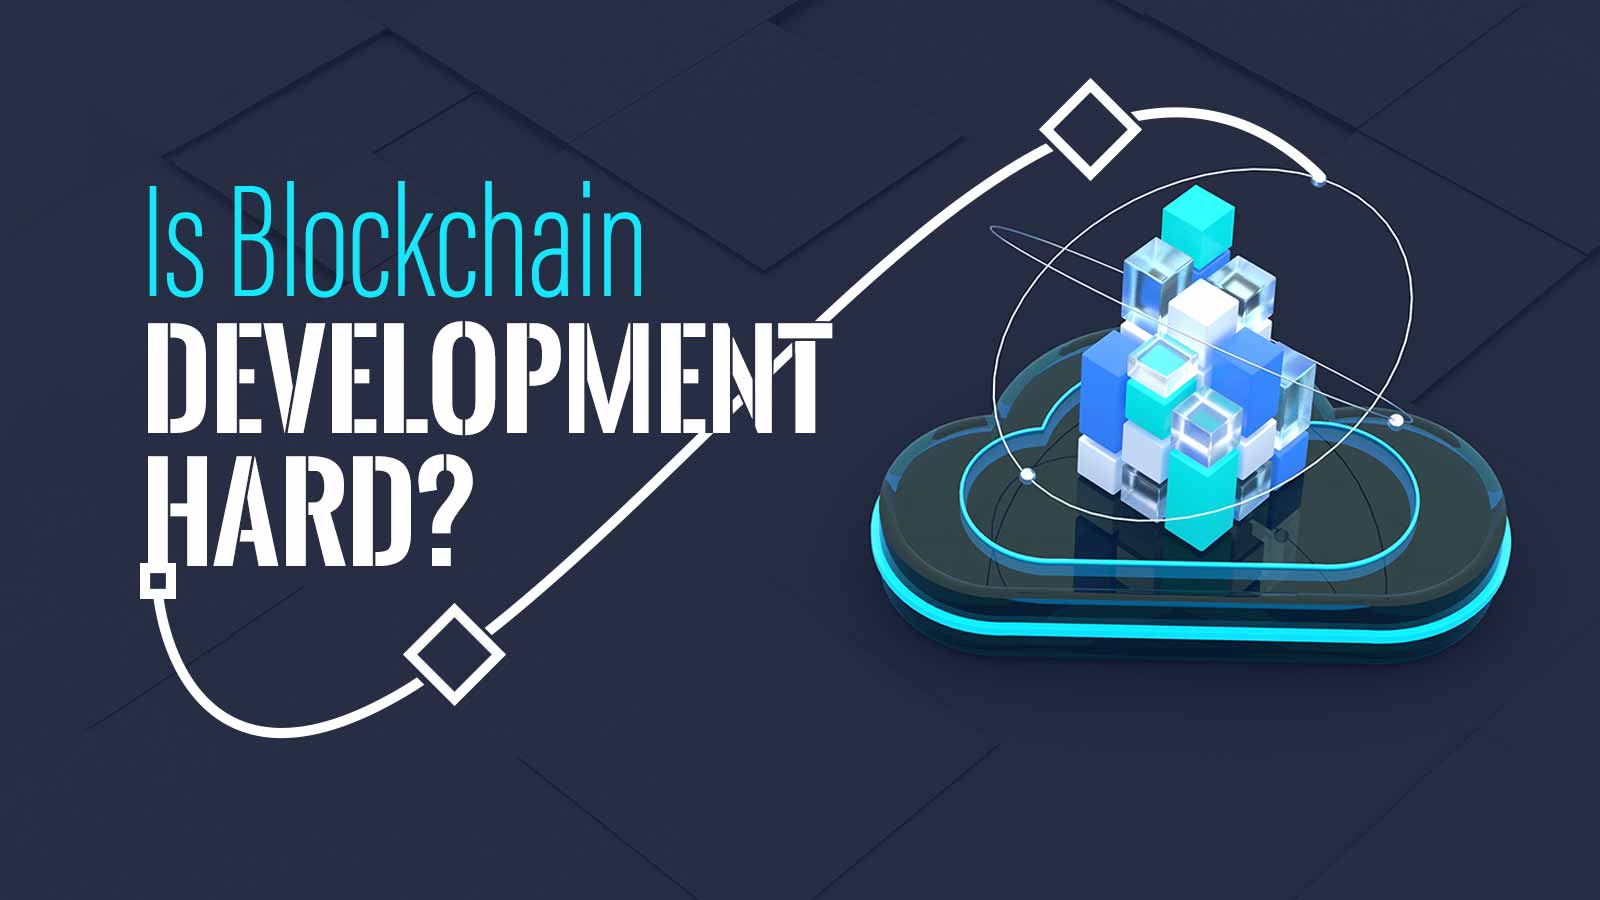 Is Blockchain Development Hard? Should I Be A Blockchain Developer?